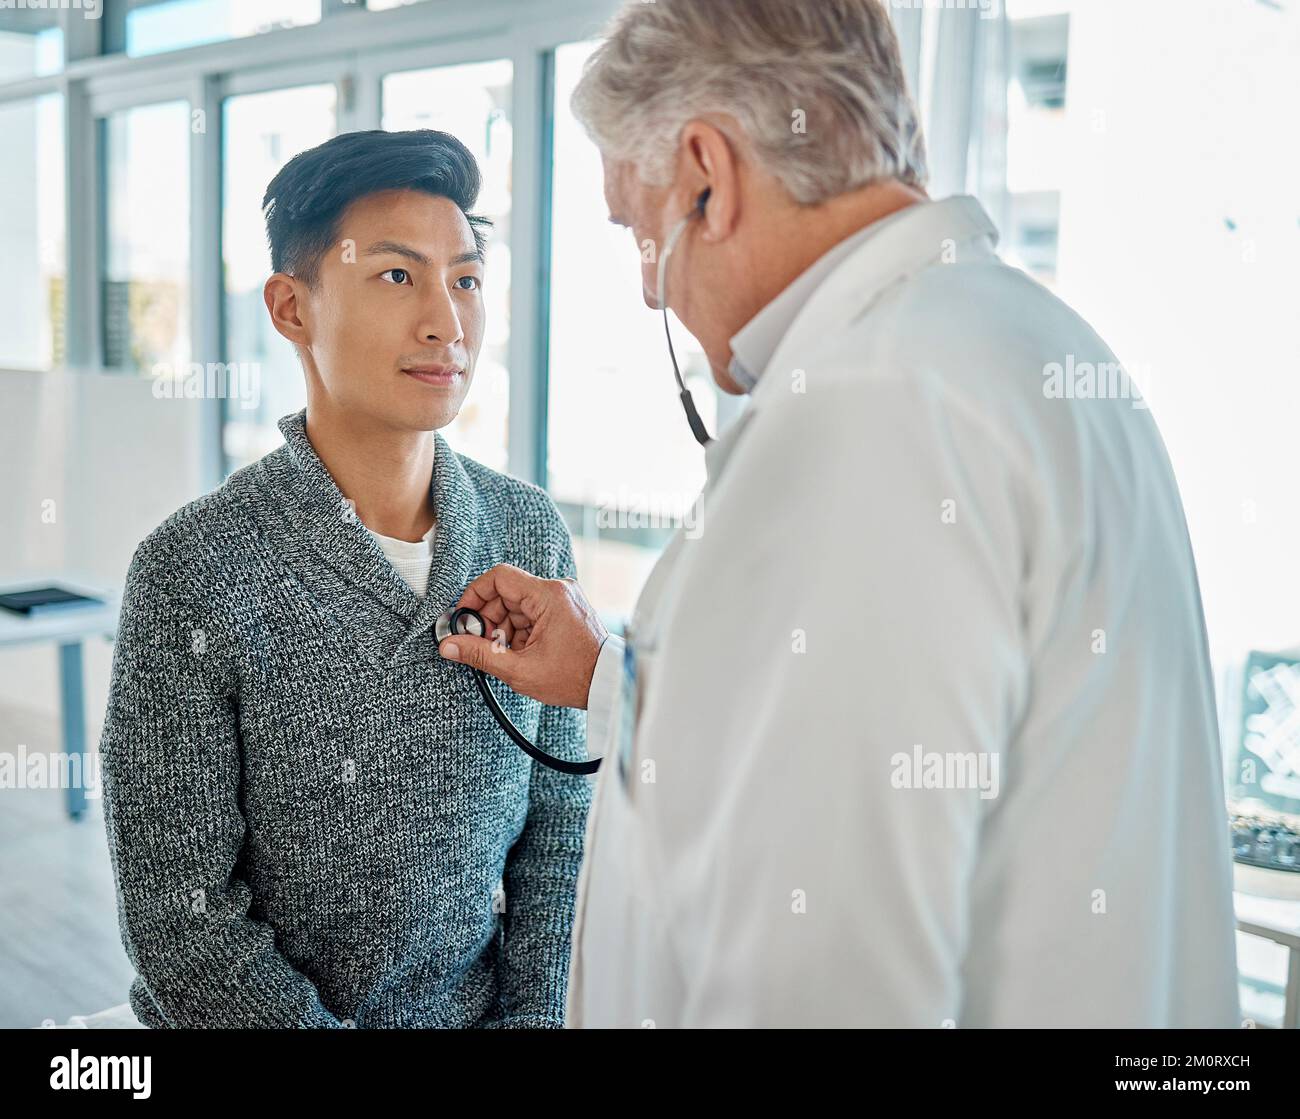 Homme asiatique faisant examiner sa poitrine et son cœur avec un stéthoscope par un médecin caucasien lors d'un examen médical de routine dans un hôpital ou une clinique Banque D'Images